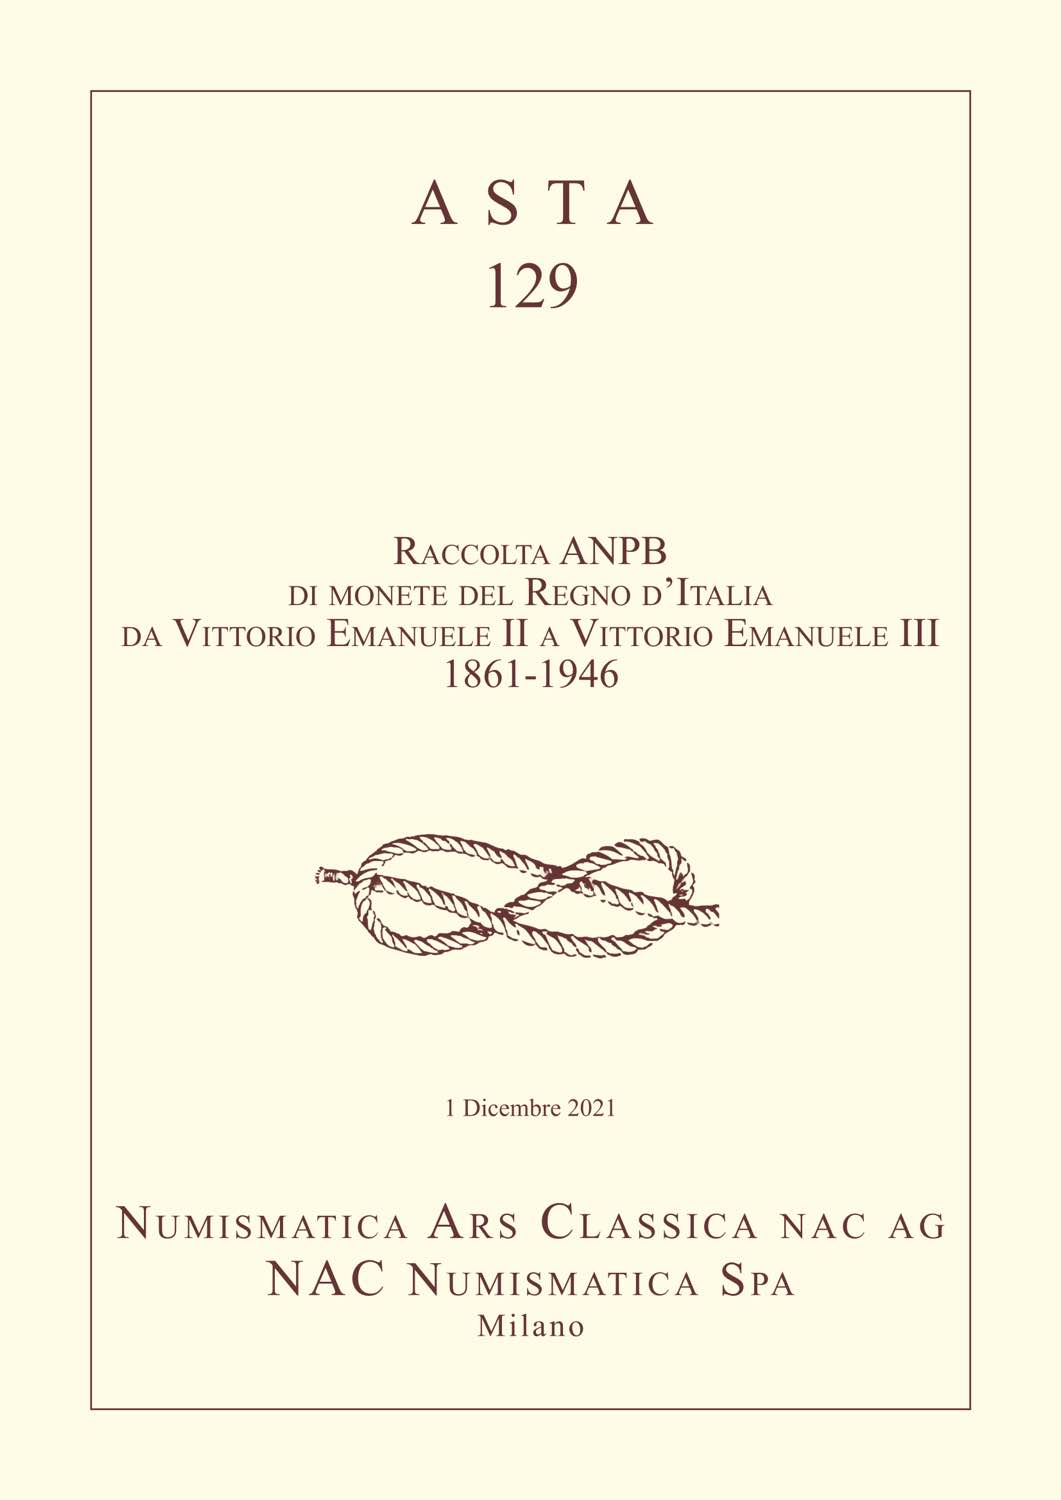 Numismatica Ars Classica - Aste - monete antiche e moderne